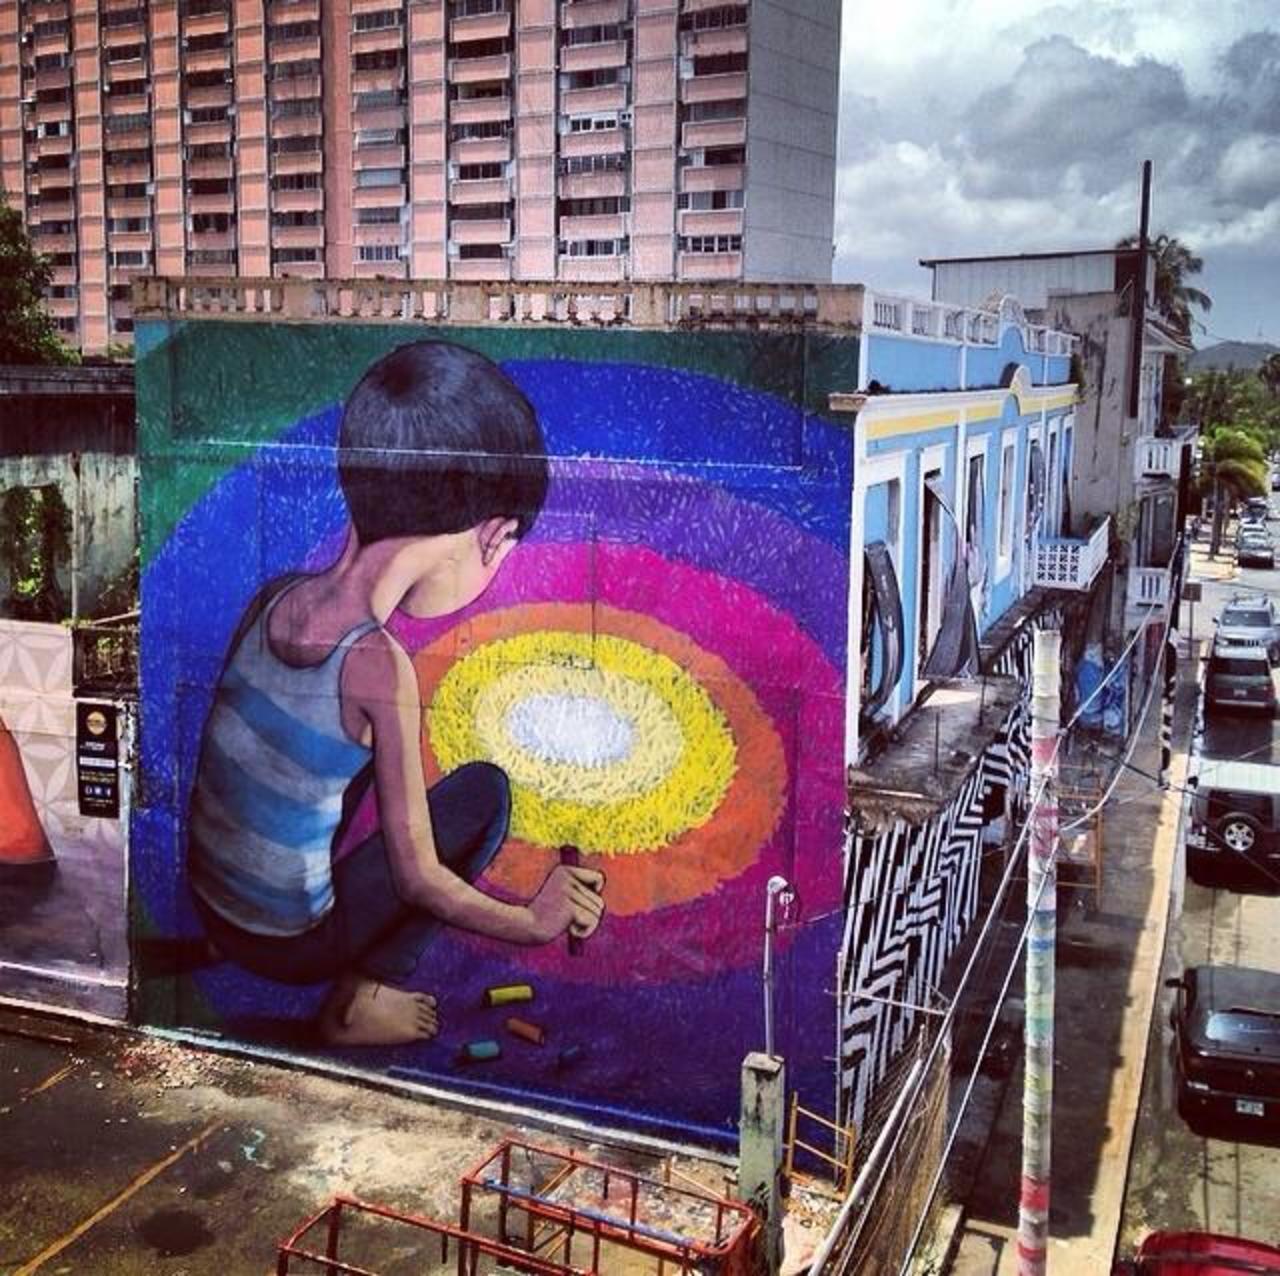 Artist Seth Globepainter new large scale Street Art mural in Puerto Rico #art #mural #graffiti #streetart http://t.co/Xvszpj5pyv